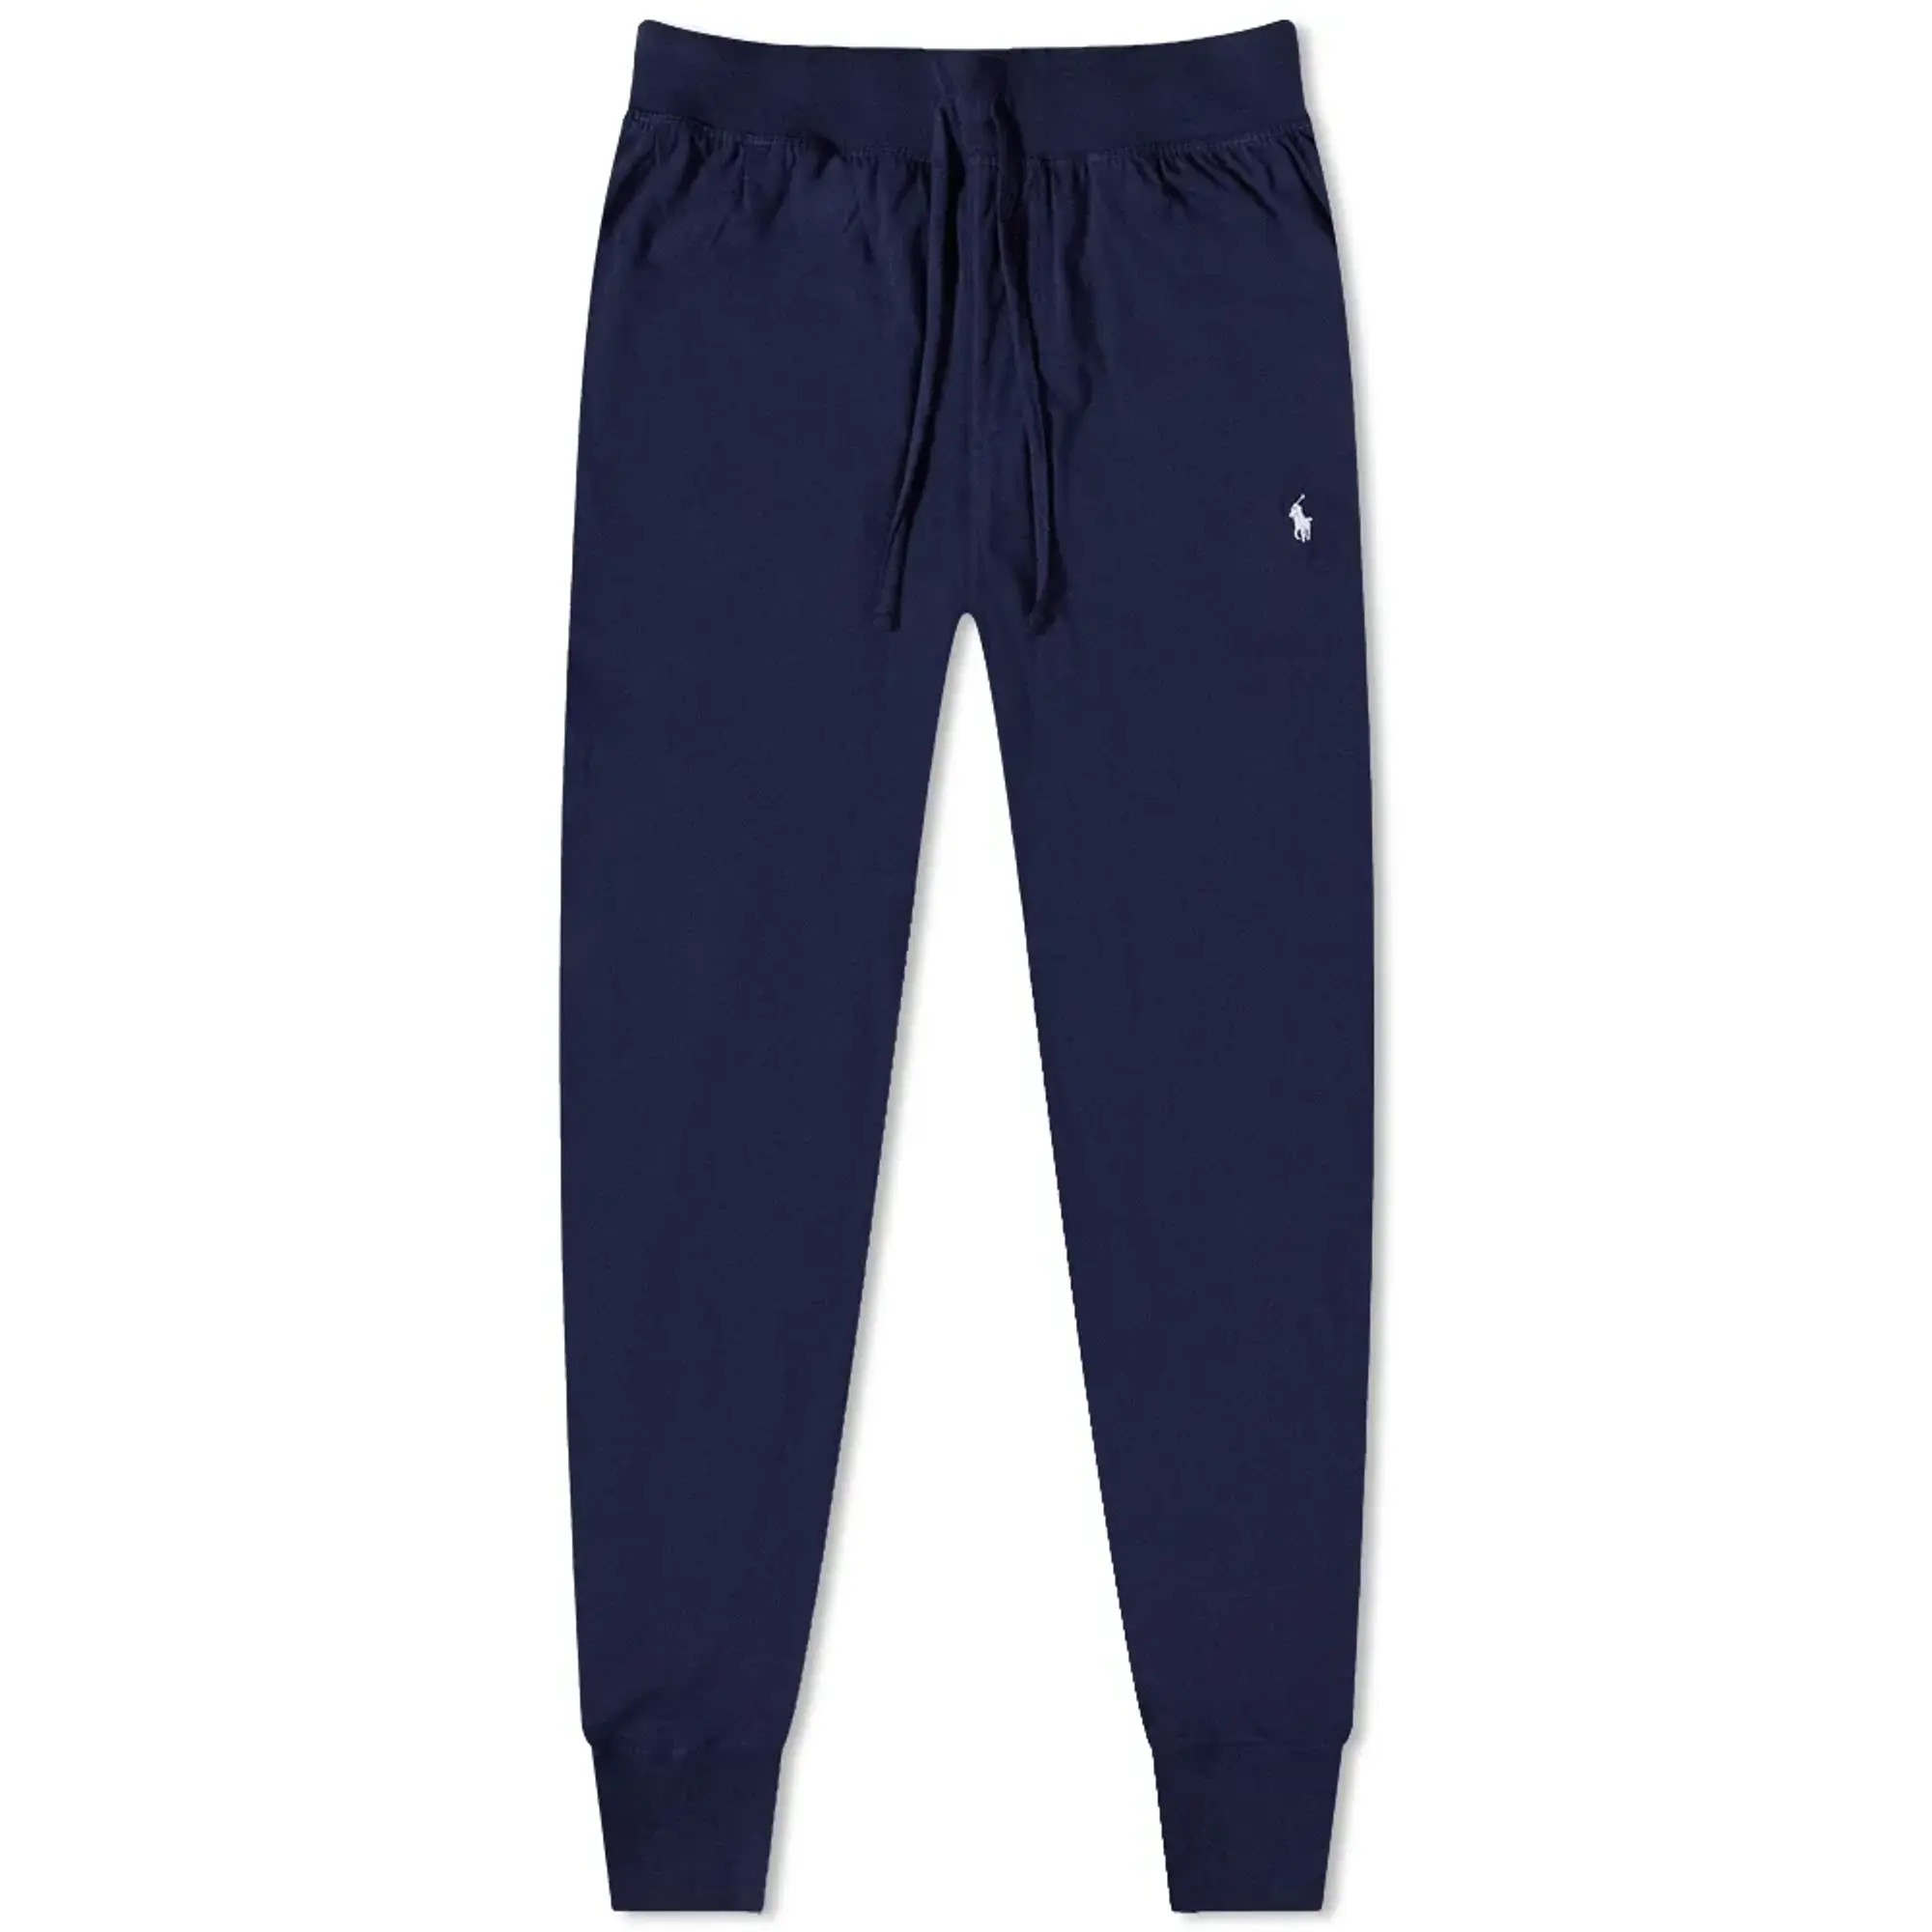 Polo Ralph Lauren Men's Sleepwear Sweat Pant Navy, 714844763002